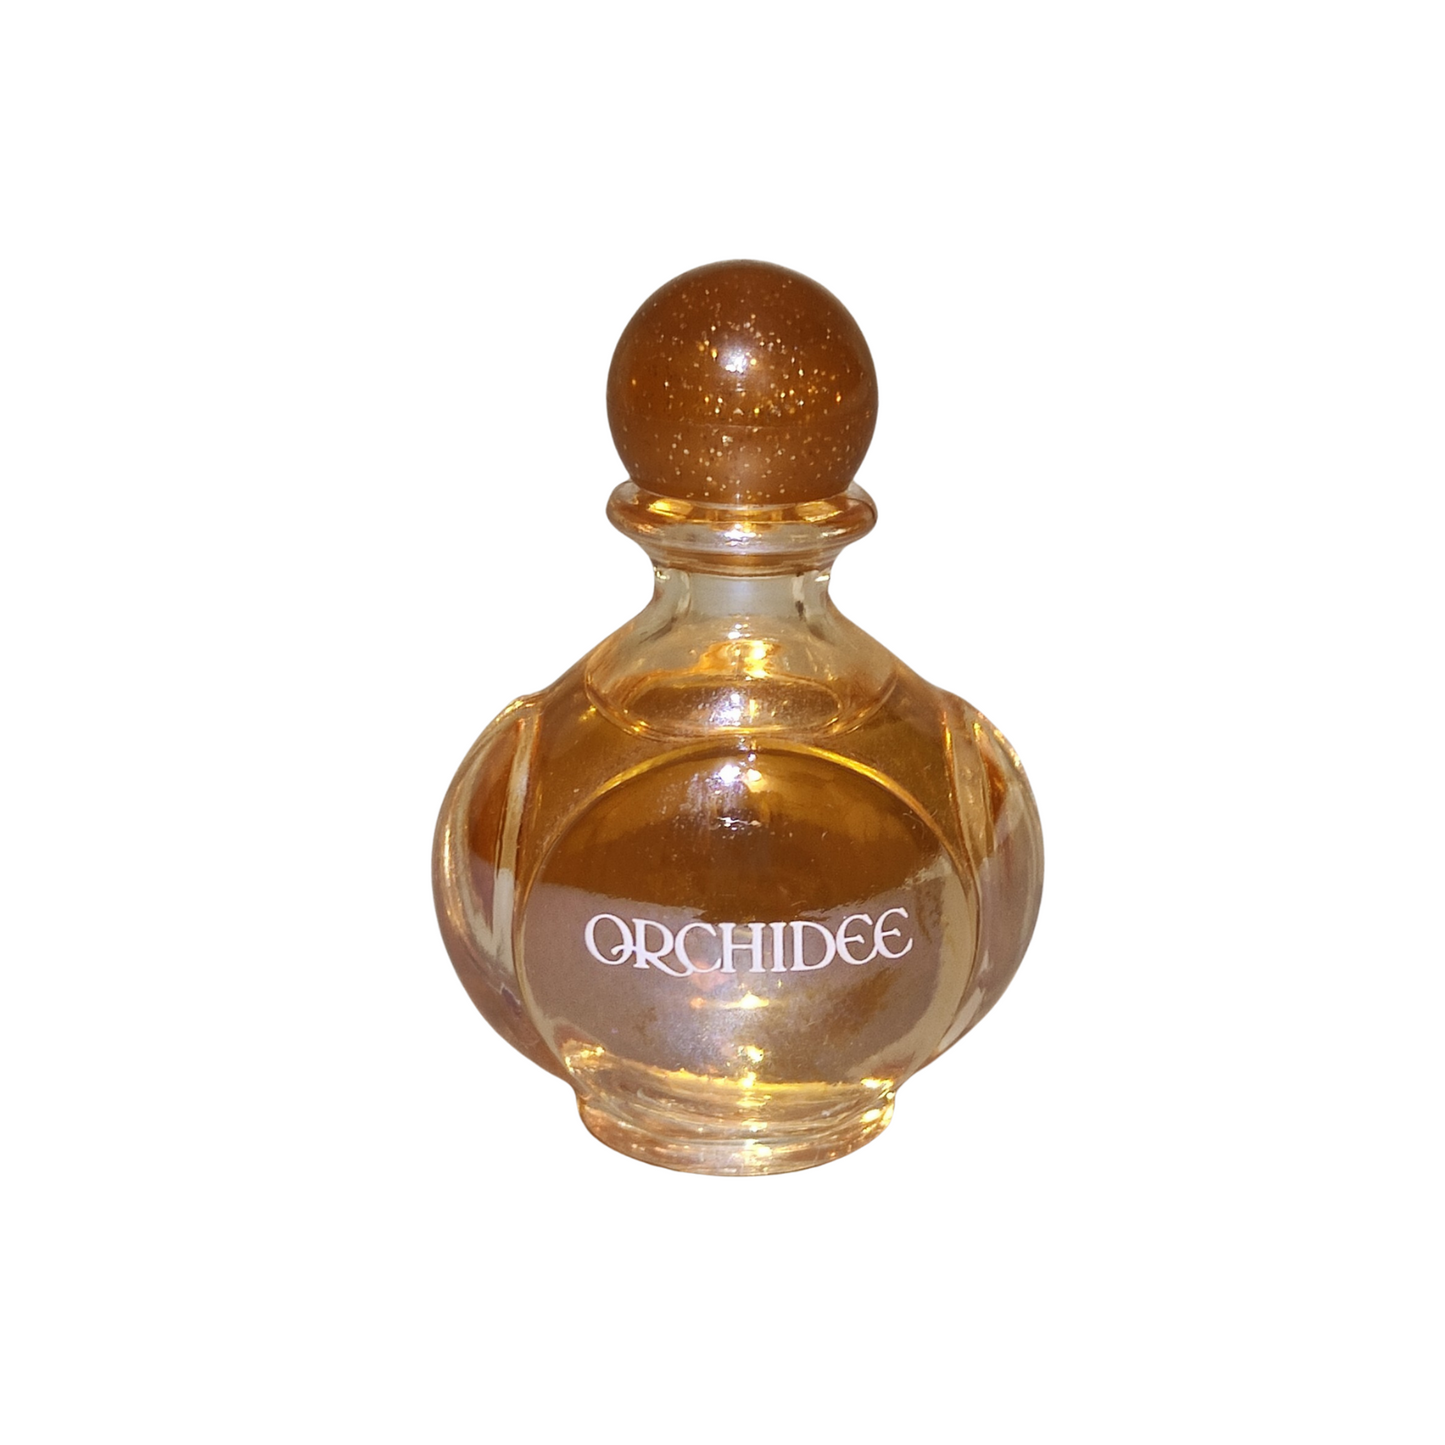 Yves Rocher Orchidee 60ml Eau de Toilette